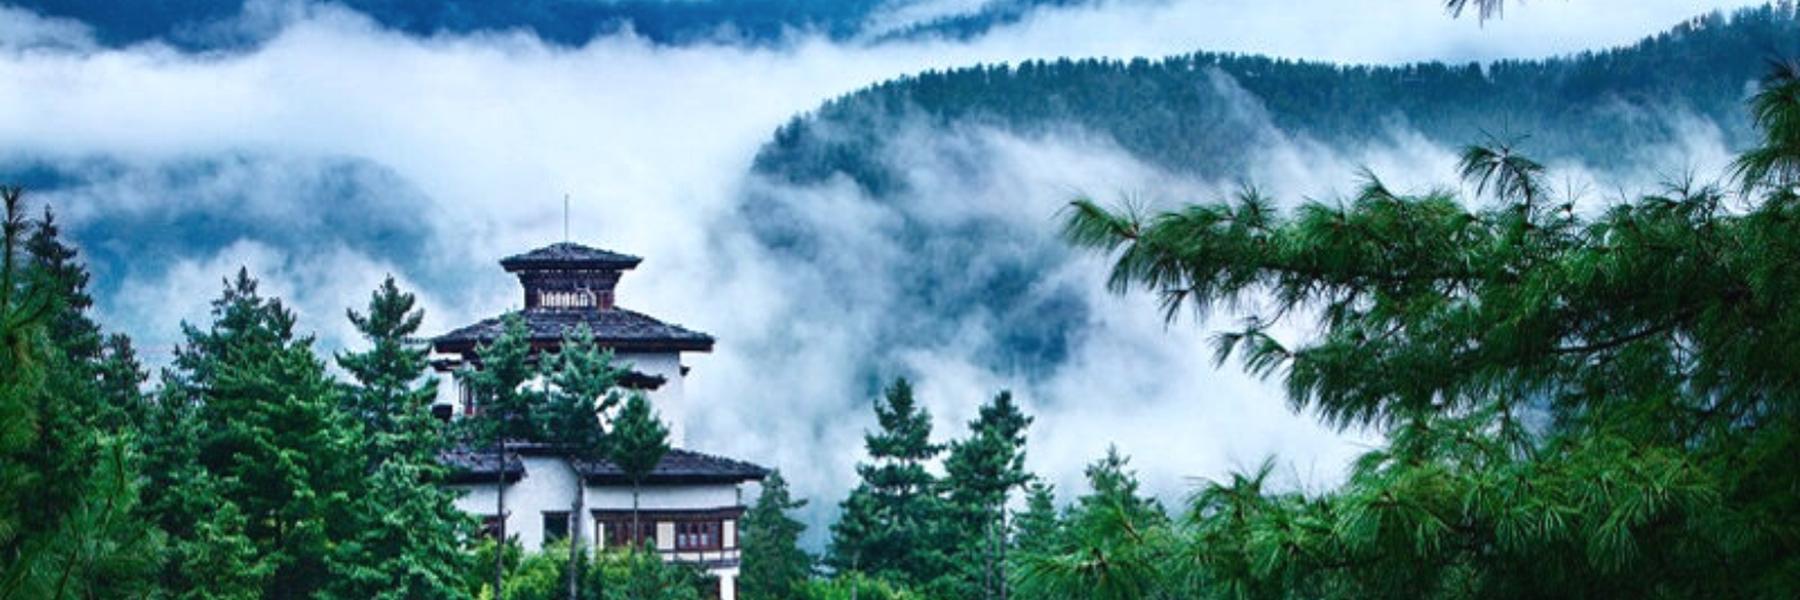 Adventure & Comfort in Bhutan & Thailand